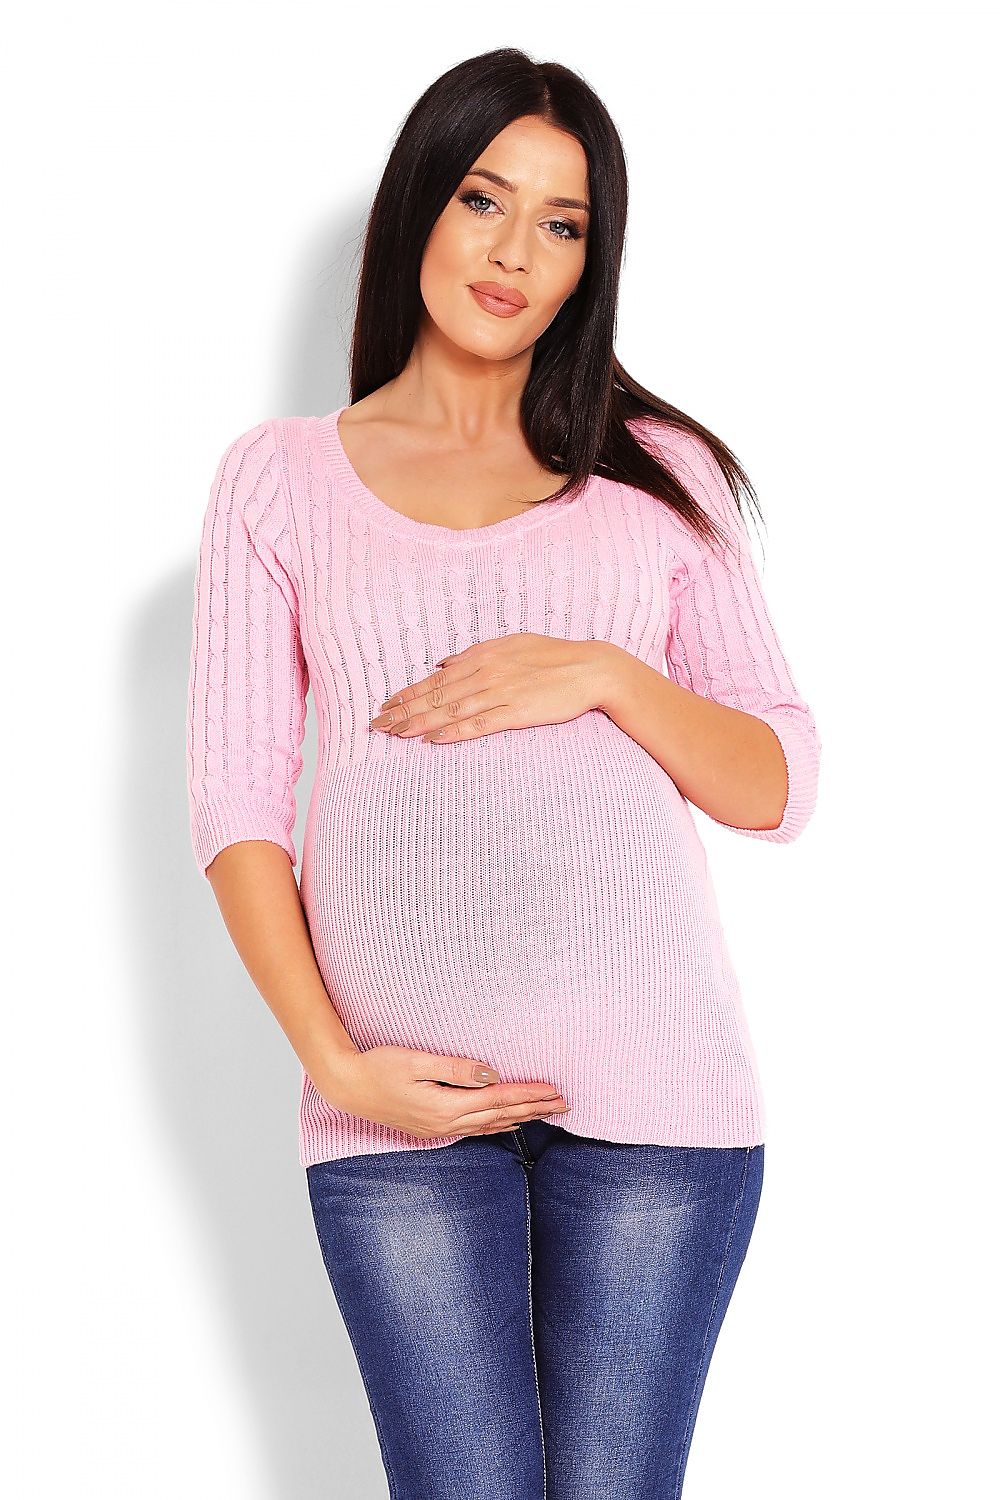 Delicate Weave Pregnancy Sweater PeeKaBoo